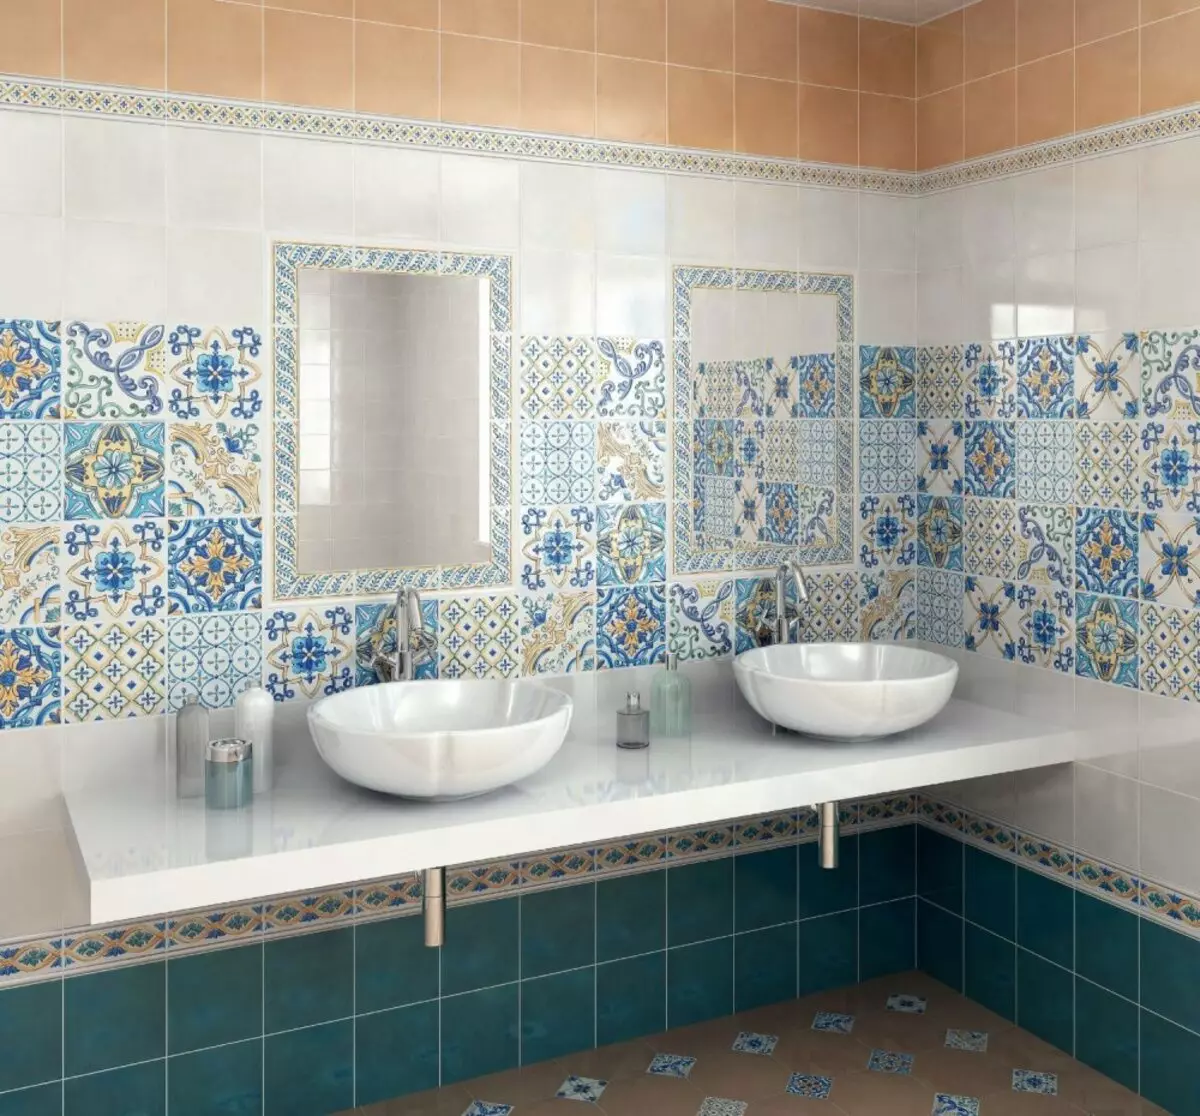 Ρωσικά πλακάκια μπάνιου: κεραμικά και άλλα πλακάκια για το μπάνιο των κατασκευαστών της Ρωσίας. Σχεδιασμός ρωσικών πλακιδίων παραγωγής 10124_23